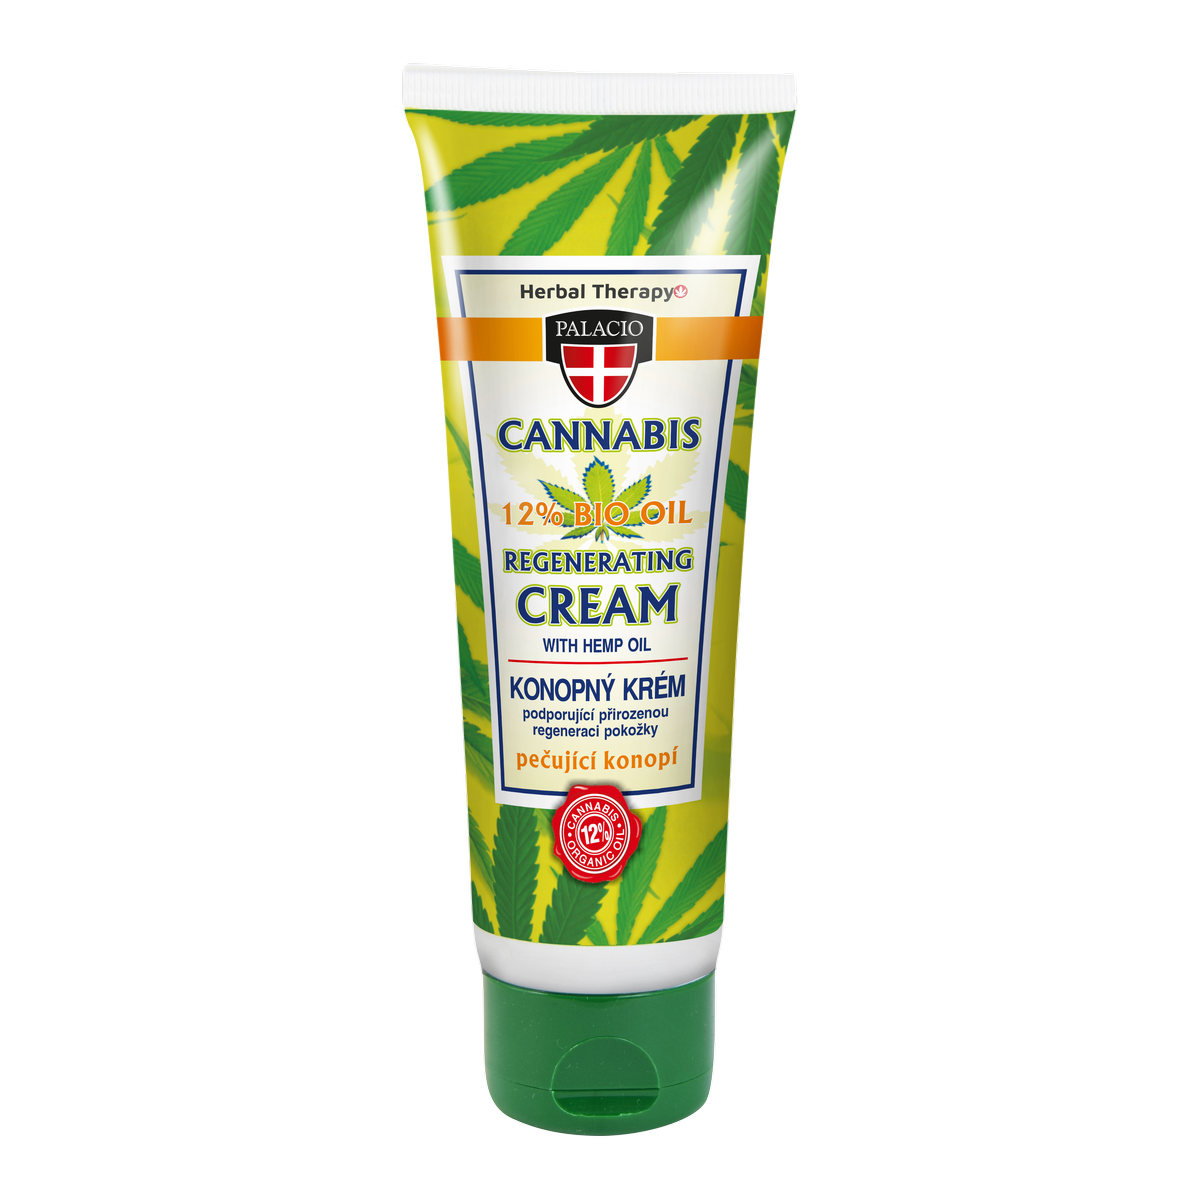 CANNABIS Hand Cream 125ml P0420 ENG WEB 54